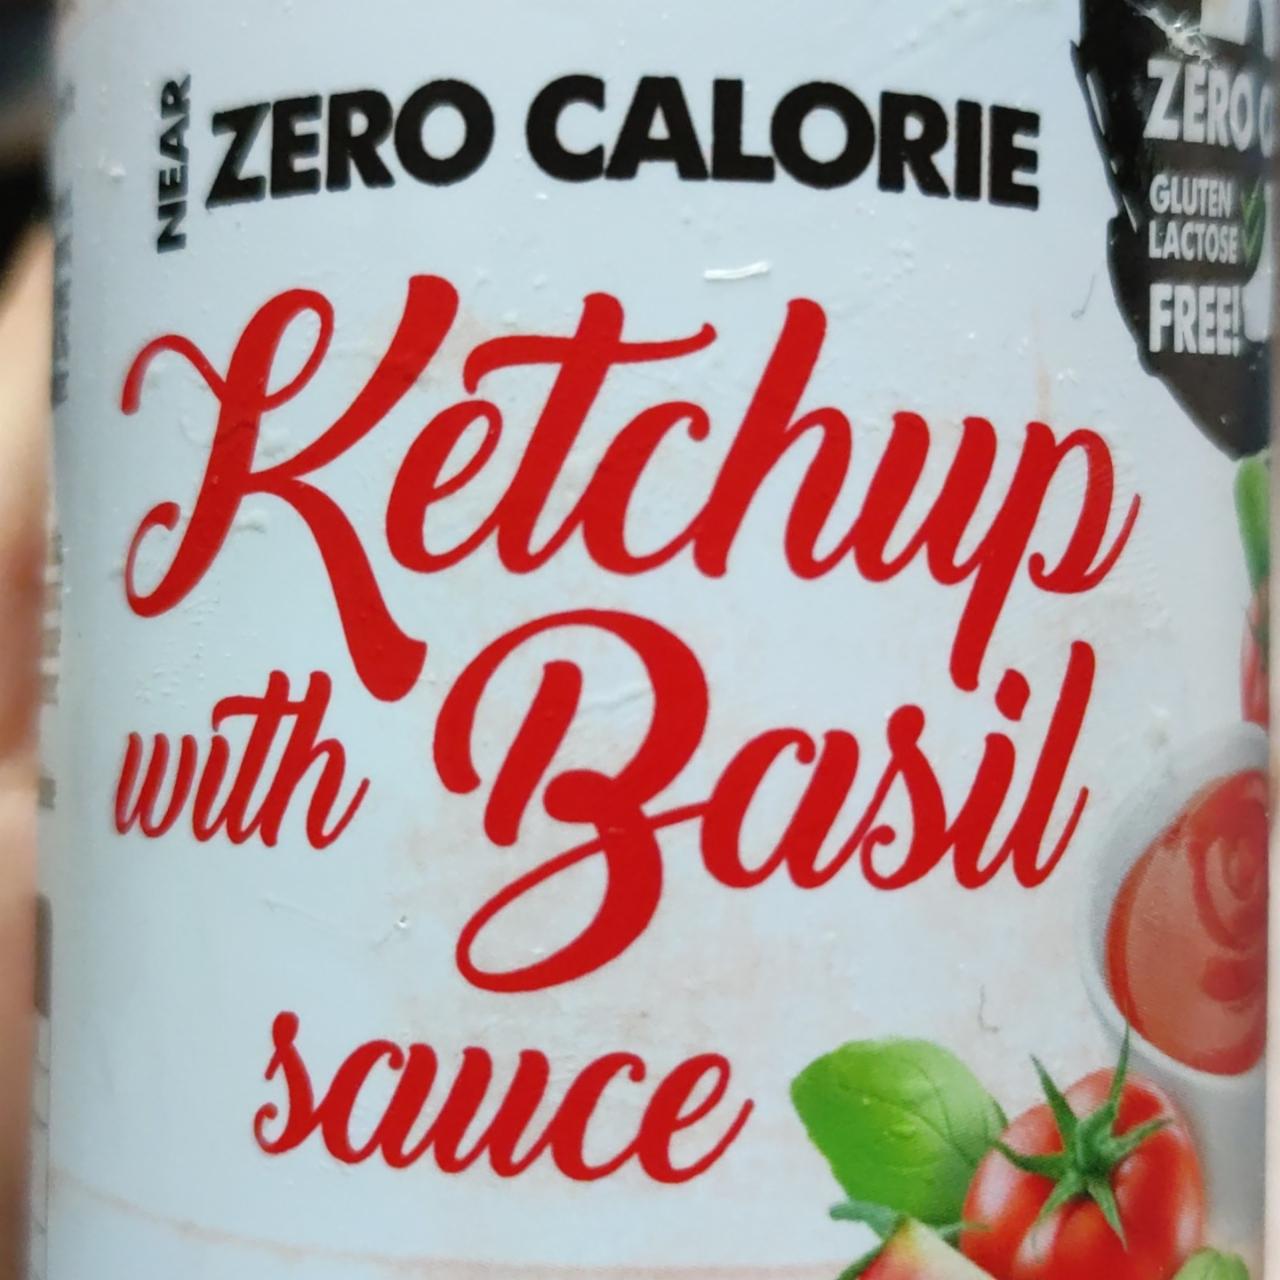 Képek - Zero calorie ketchup with basil sauce Forpro